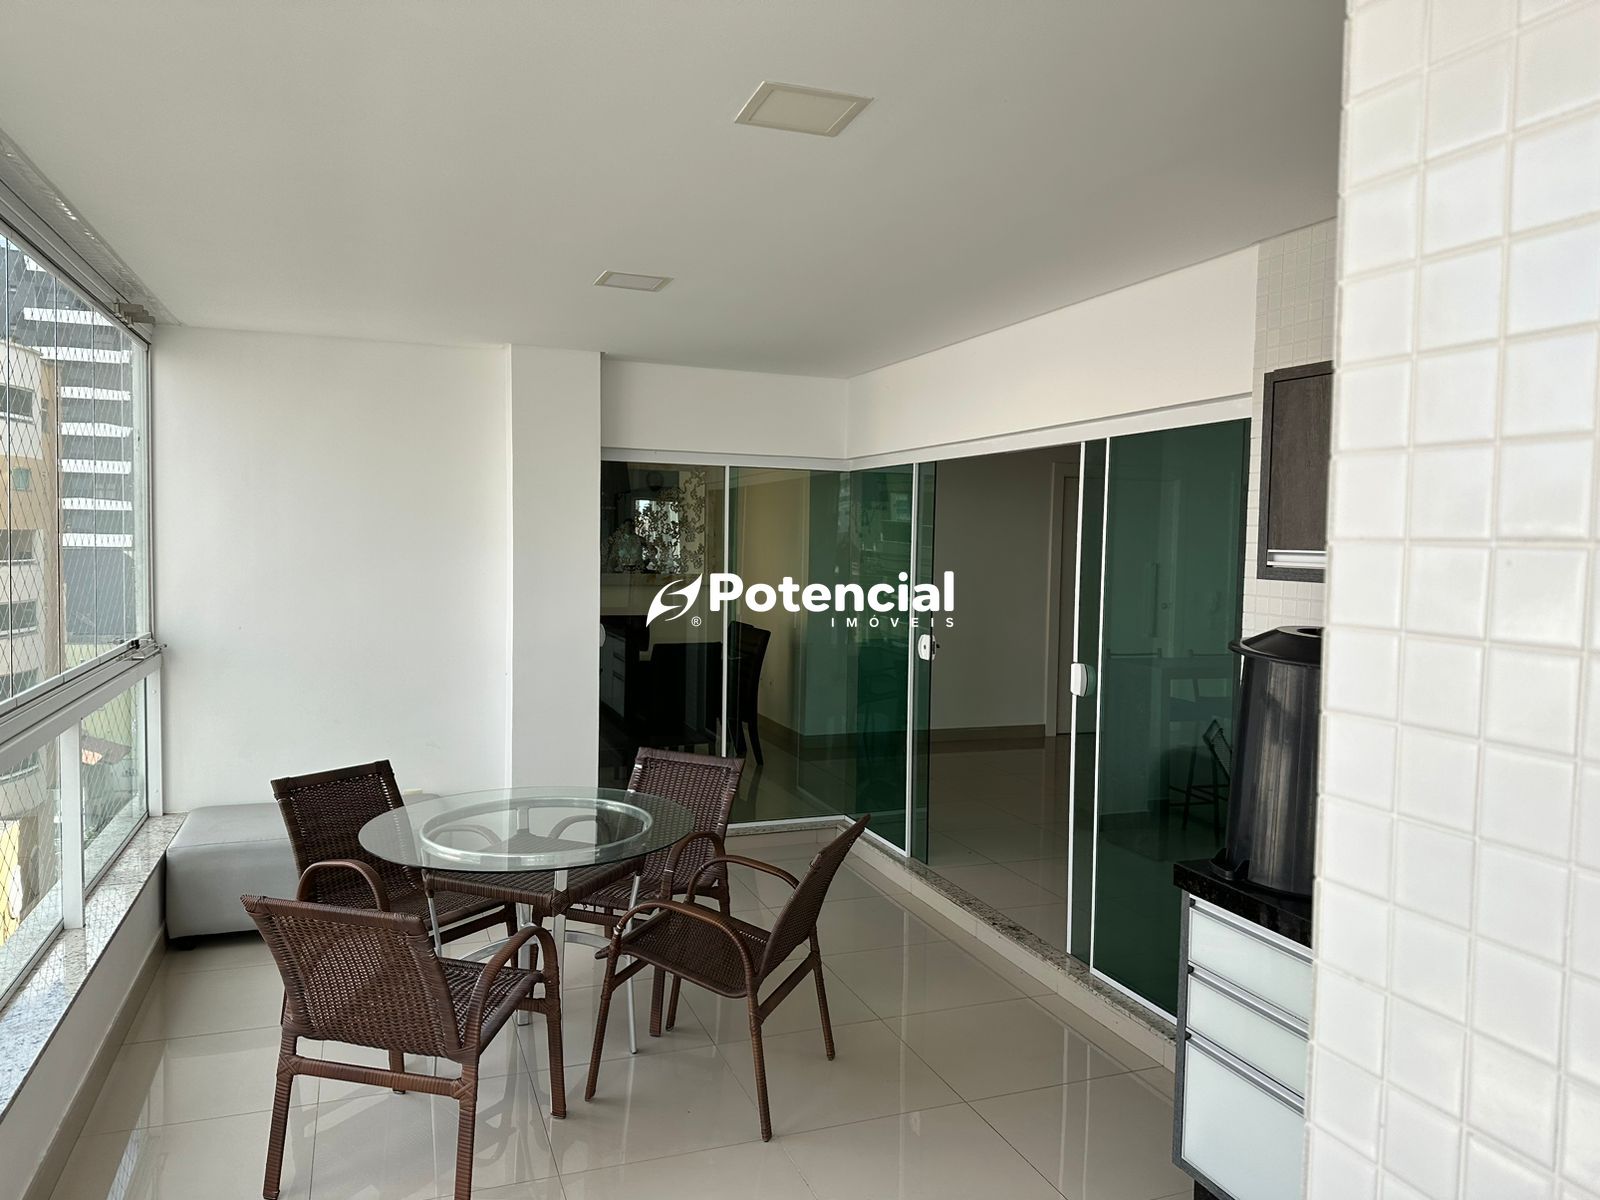 Imagem de Apartamento 4 Suítes Mobiliado | Meia Praia - Itapema | Potencial Imóveis